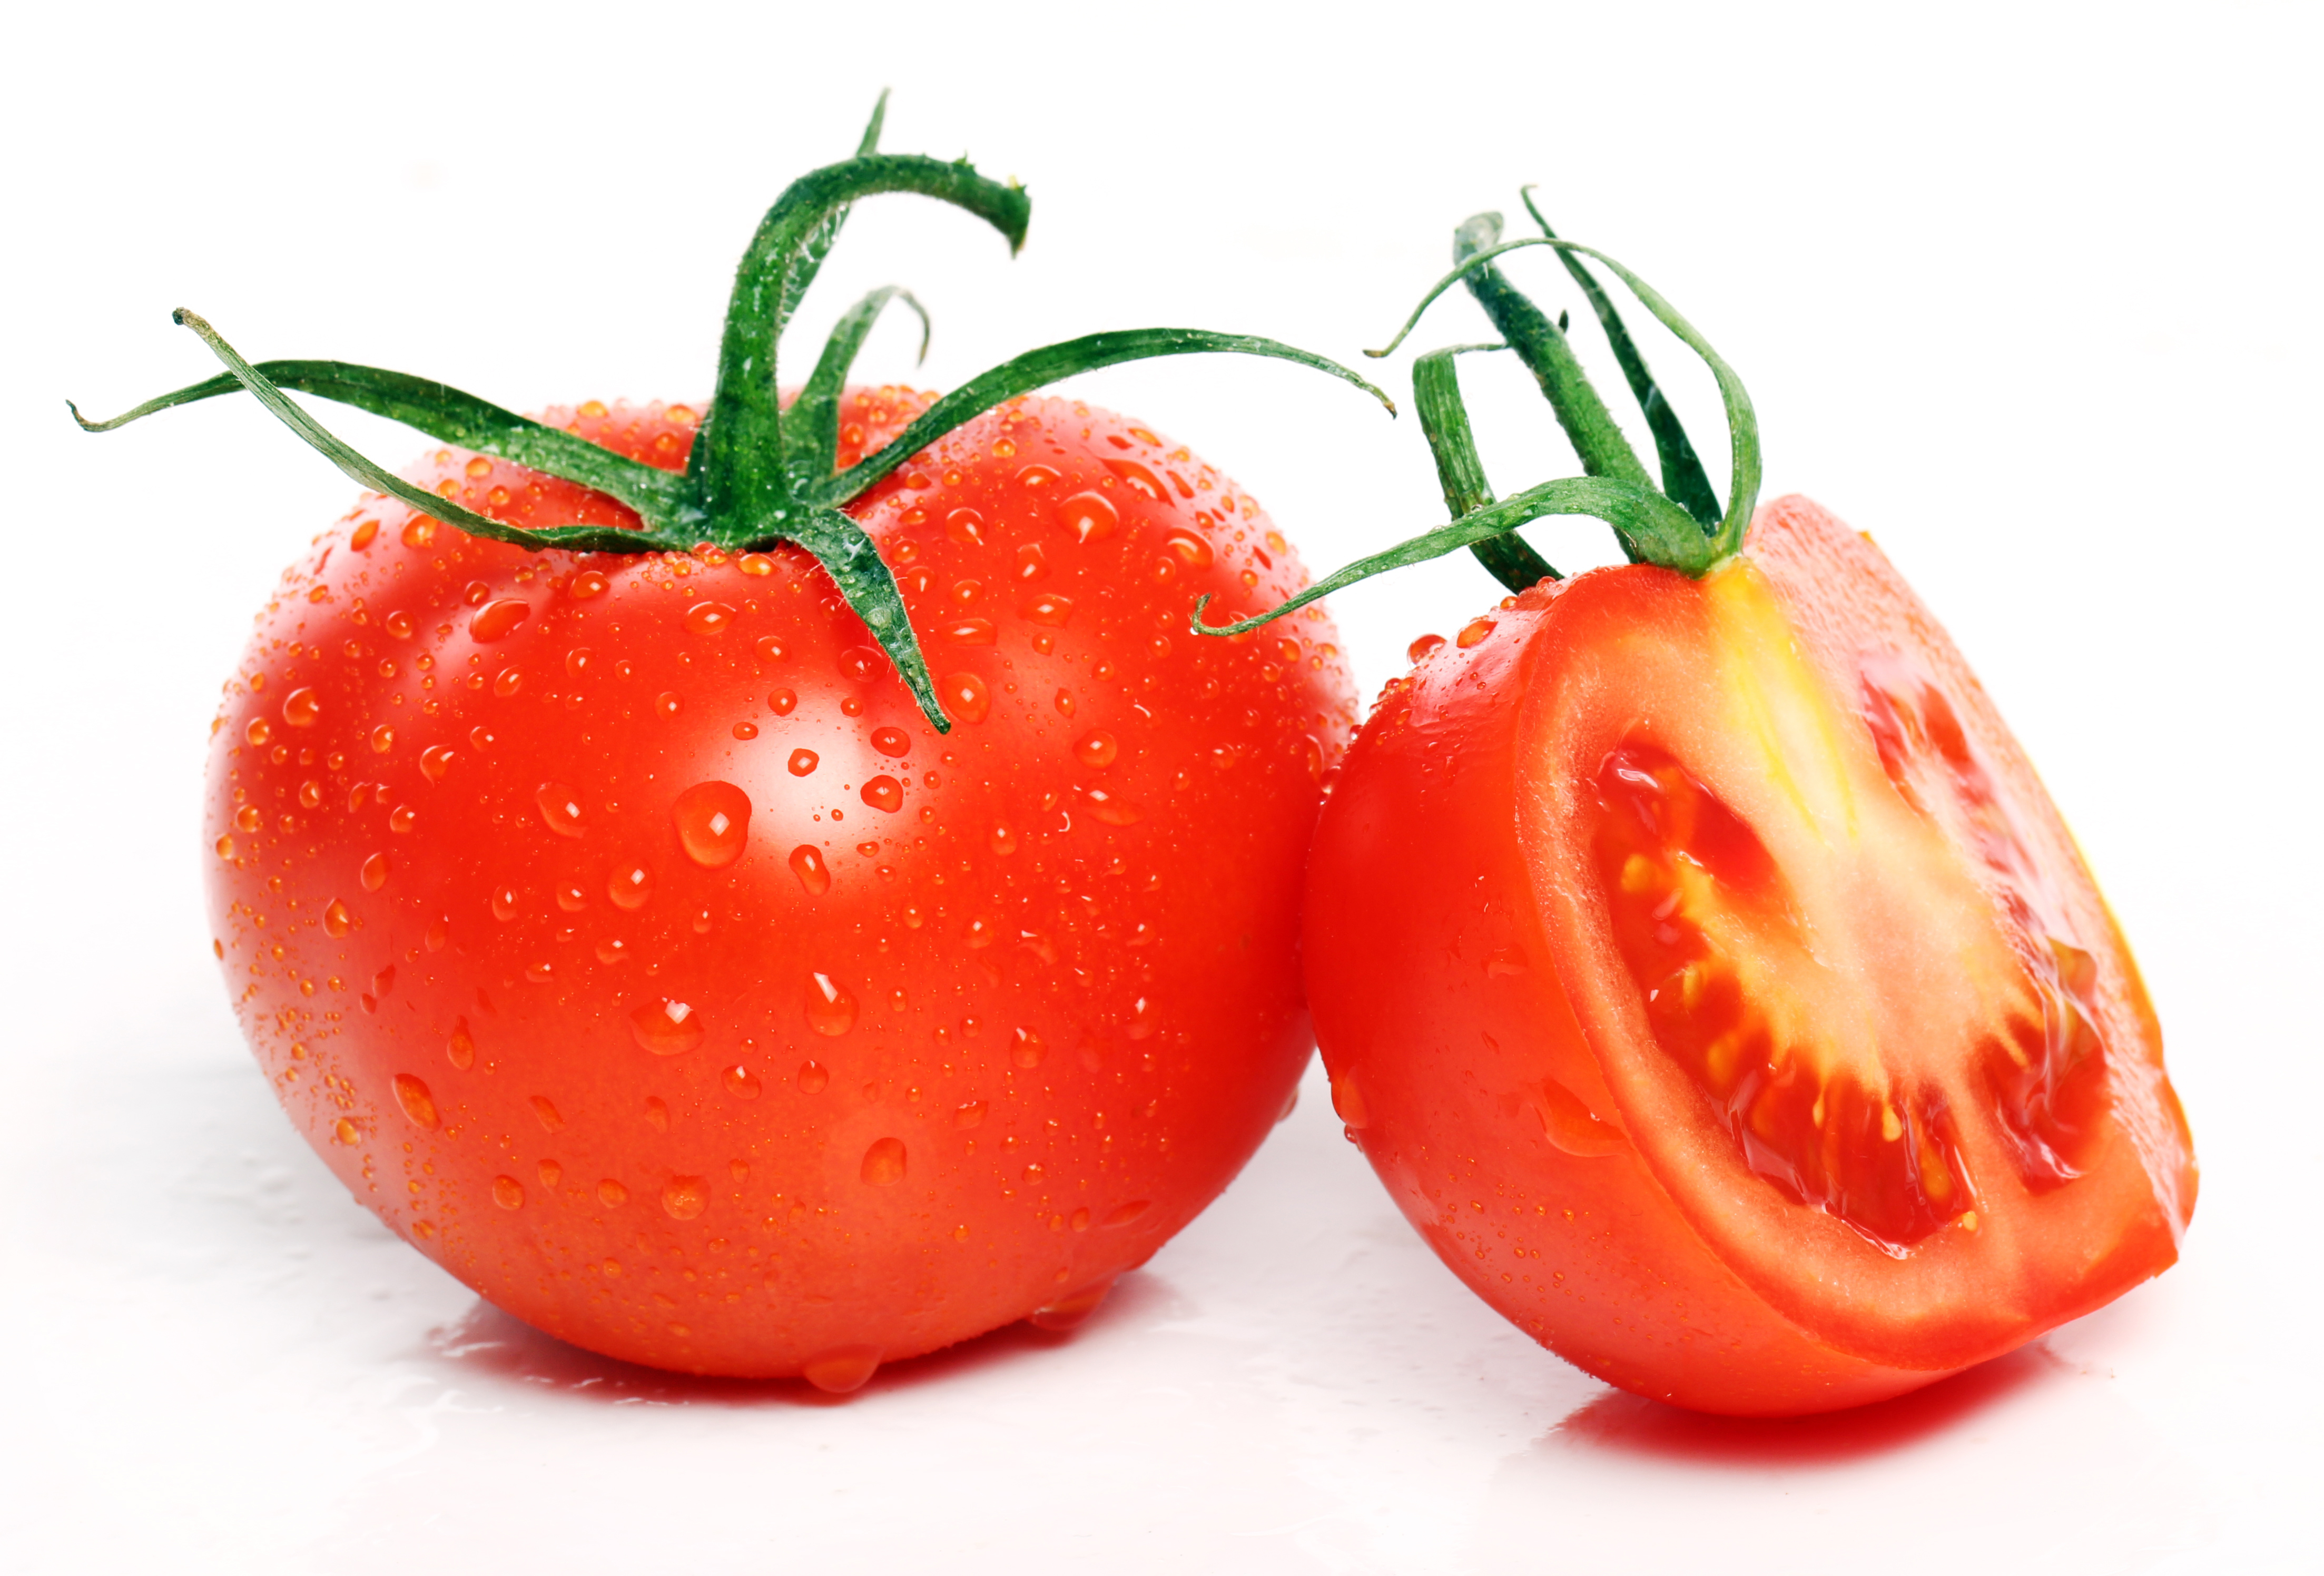 番茄含有番茄红素，番茄红素的抗氧化效果有助于降低患上白内障的几率。-图取自freepik-